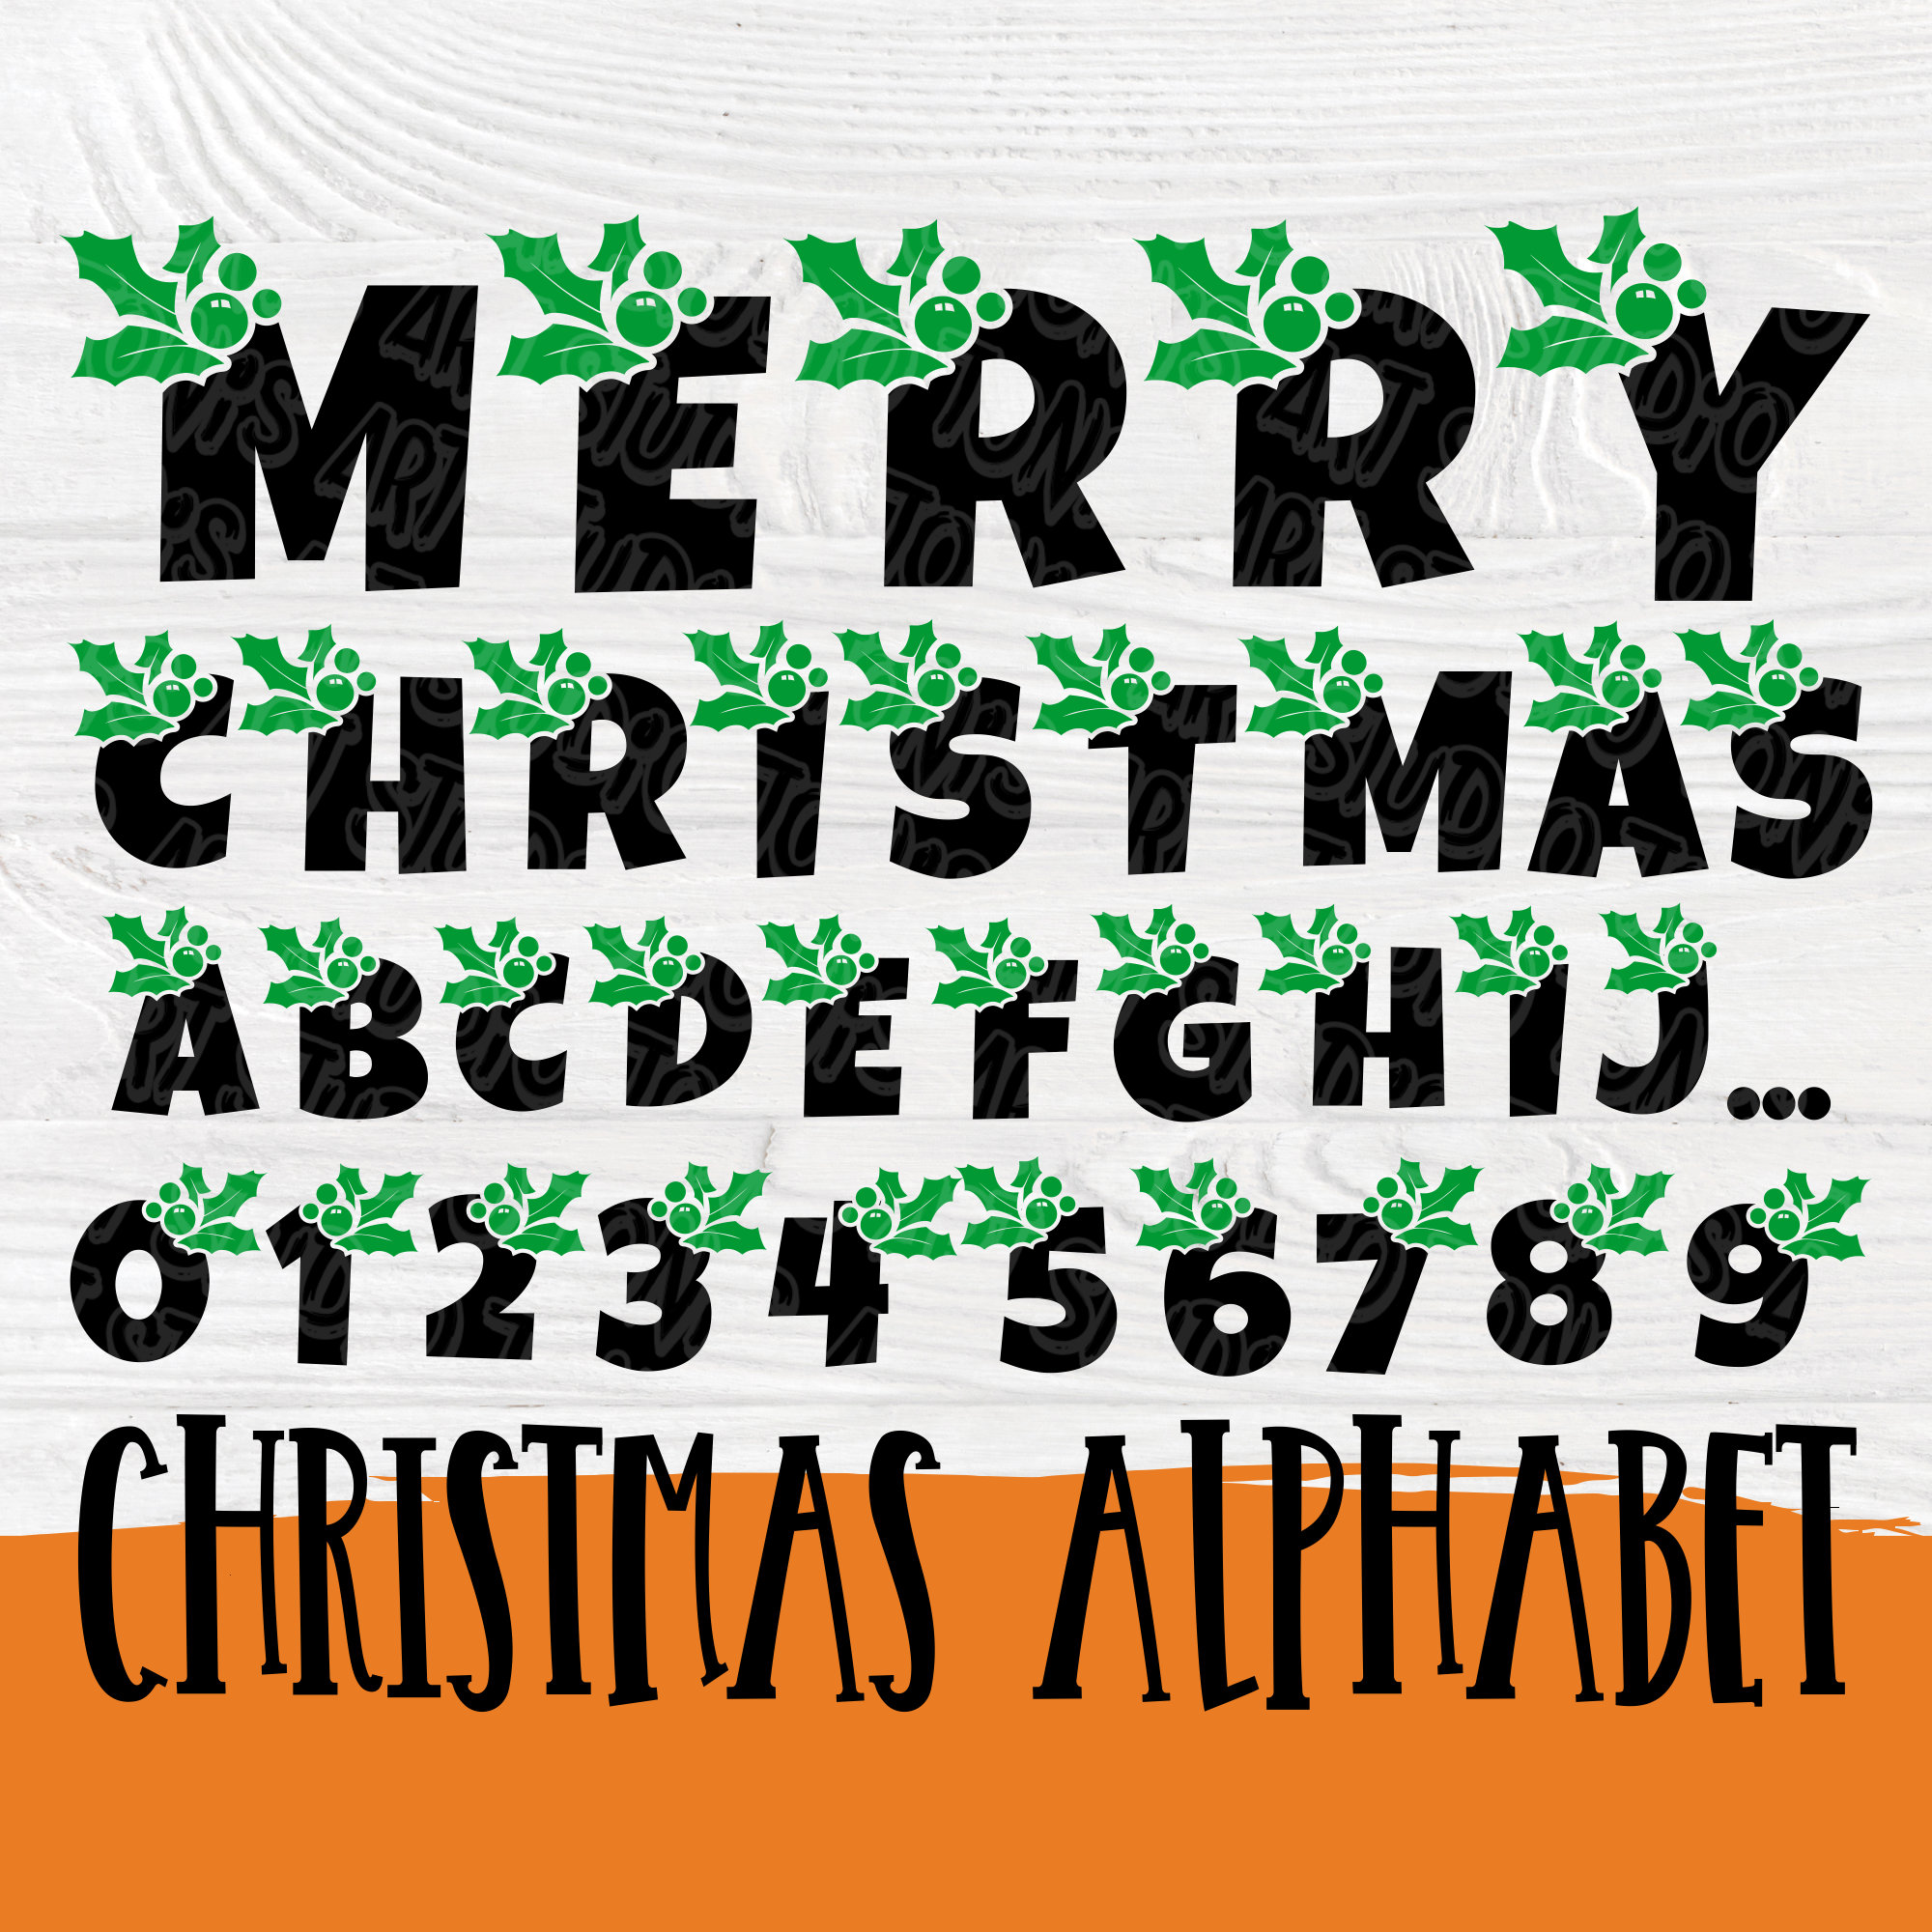 Download Christmas font SVG | Christmas alphabet svg | Christmas ...